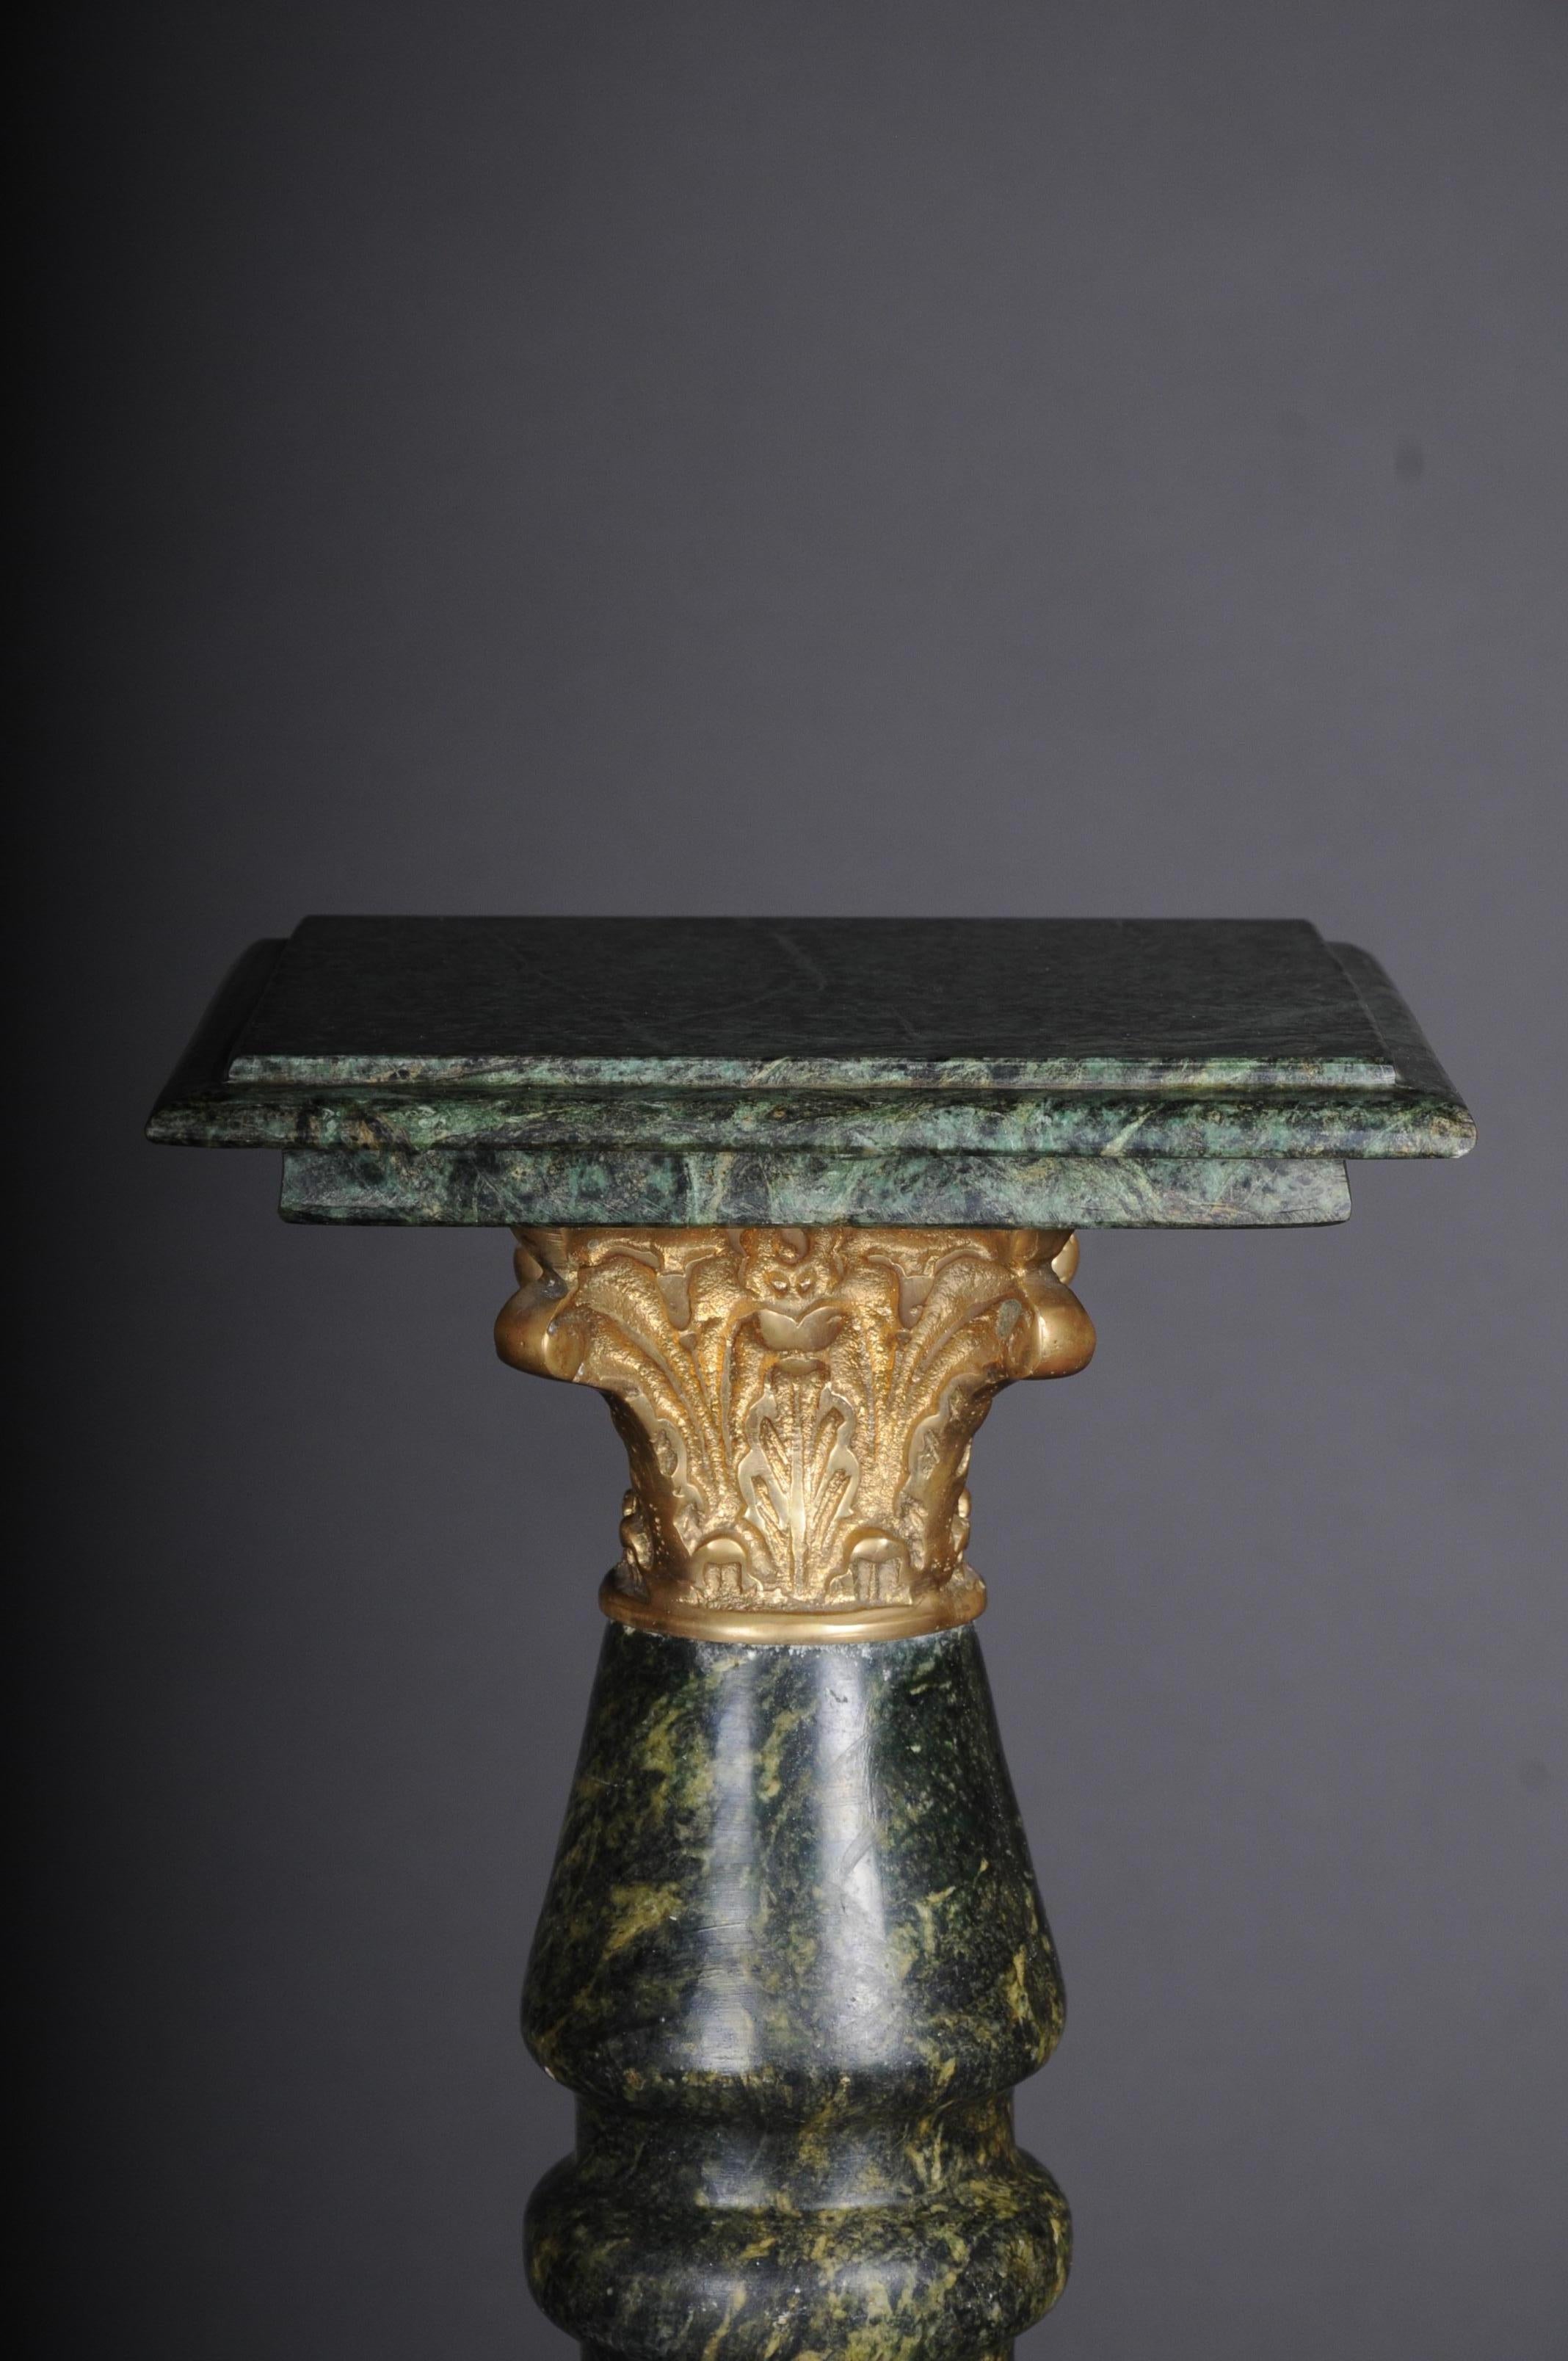 marmorsäule aus dem 20. Jahrhundert im Stil Louis XV
Grüner Marmor mit Sockeln und Kapitellen aus Bronze. Rechteckige, profilierte Abdeckplatte. Teilweise gedrehte Säulenwelle
Äußerst dekorativ.

(U-Hud-3).
         